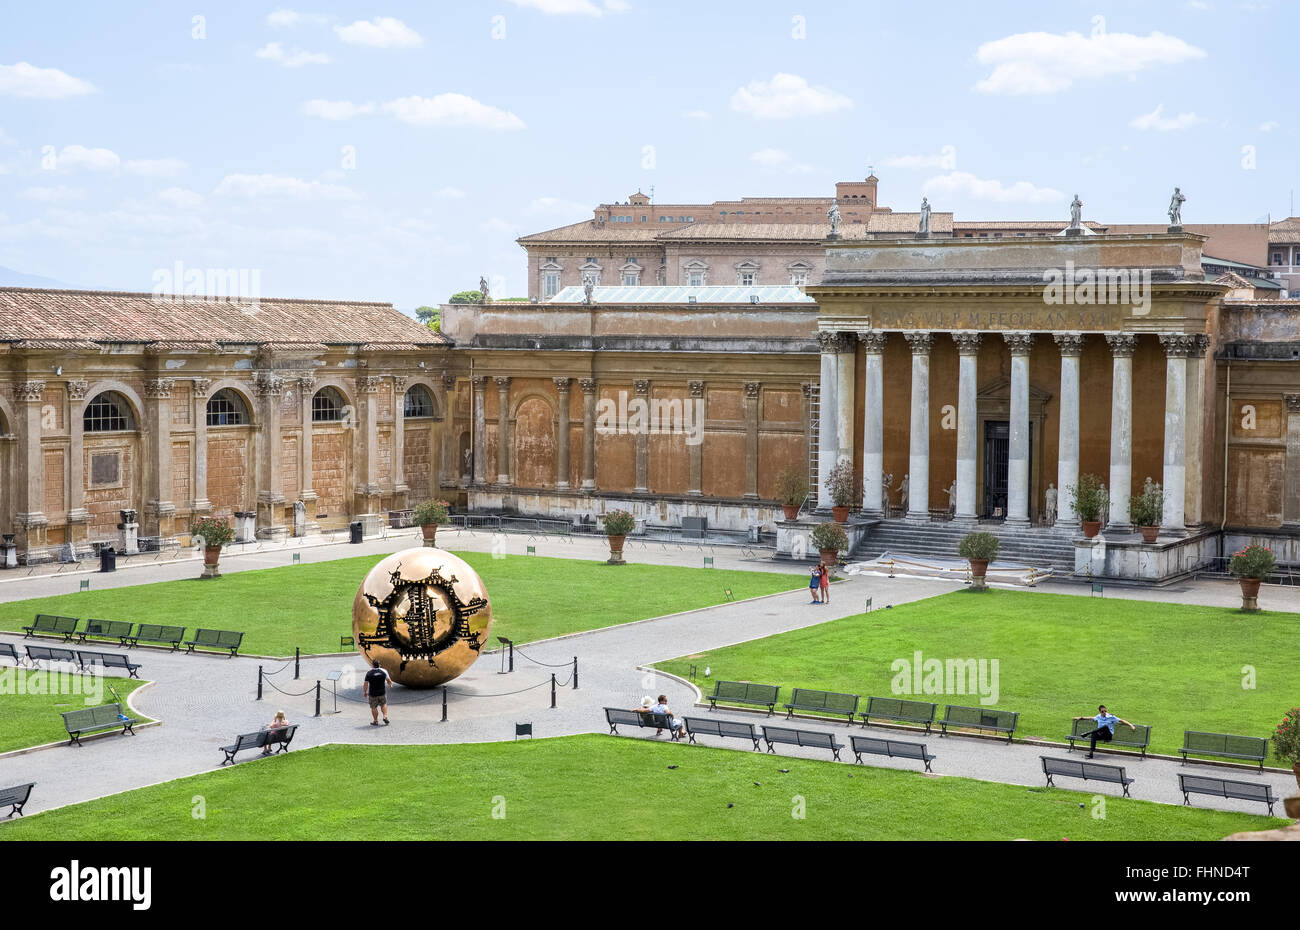 Cortile del Belvedere in Vaticano che contiene la sfera entro una sfera scultura di Arnaldo Pomodoro. Foto Stock